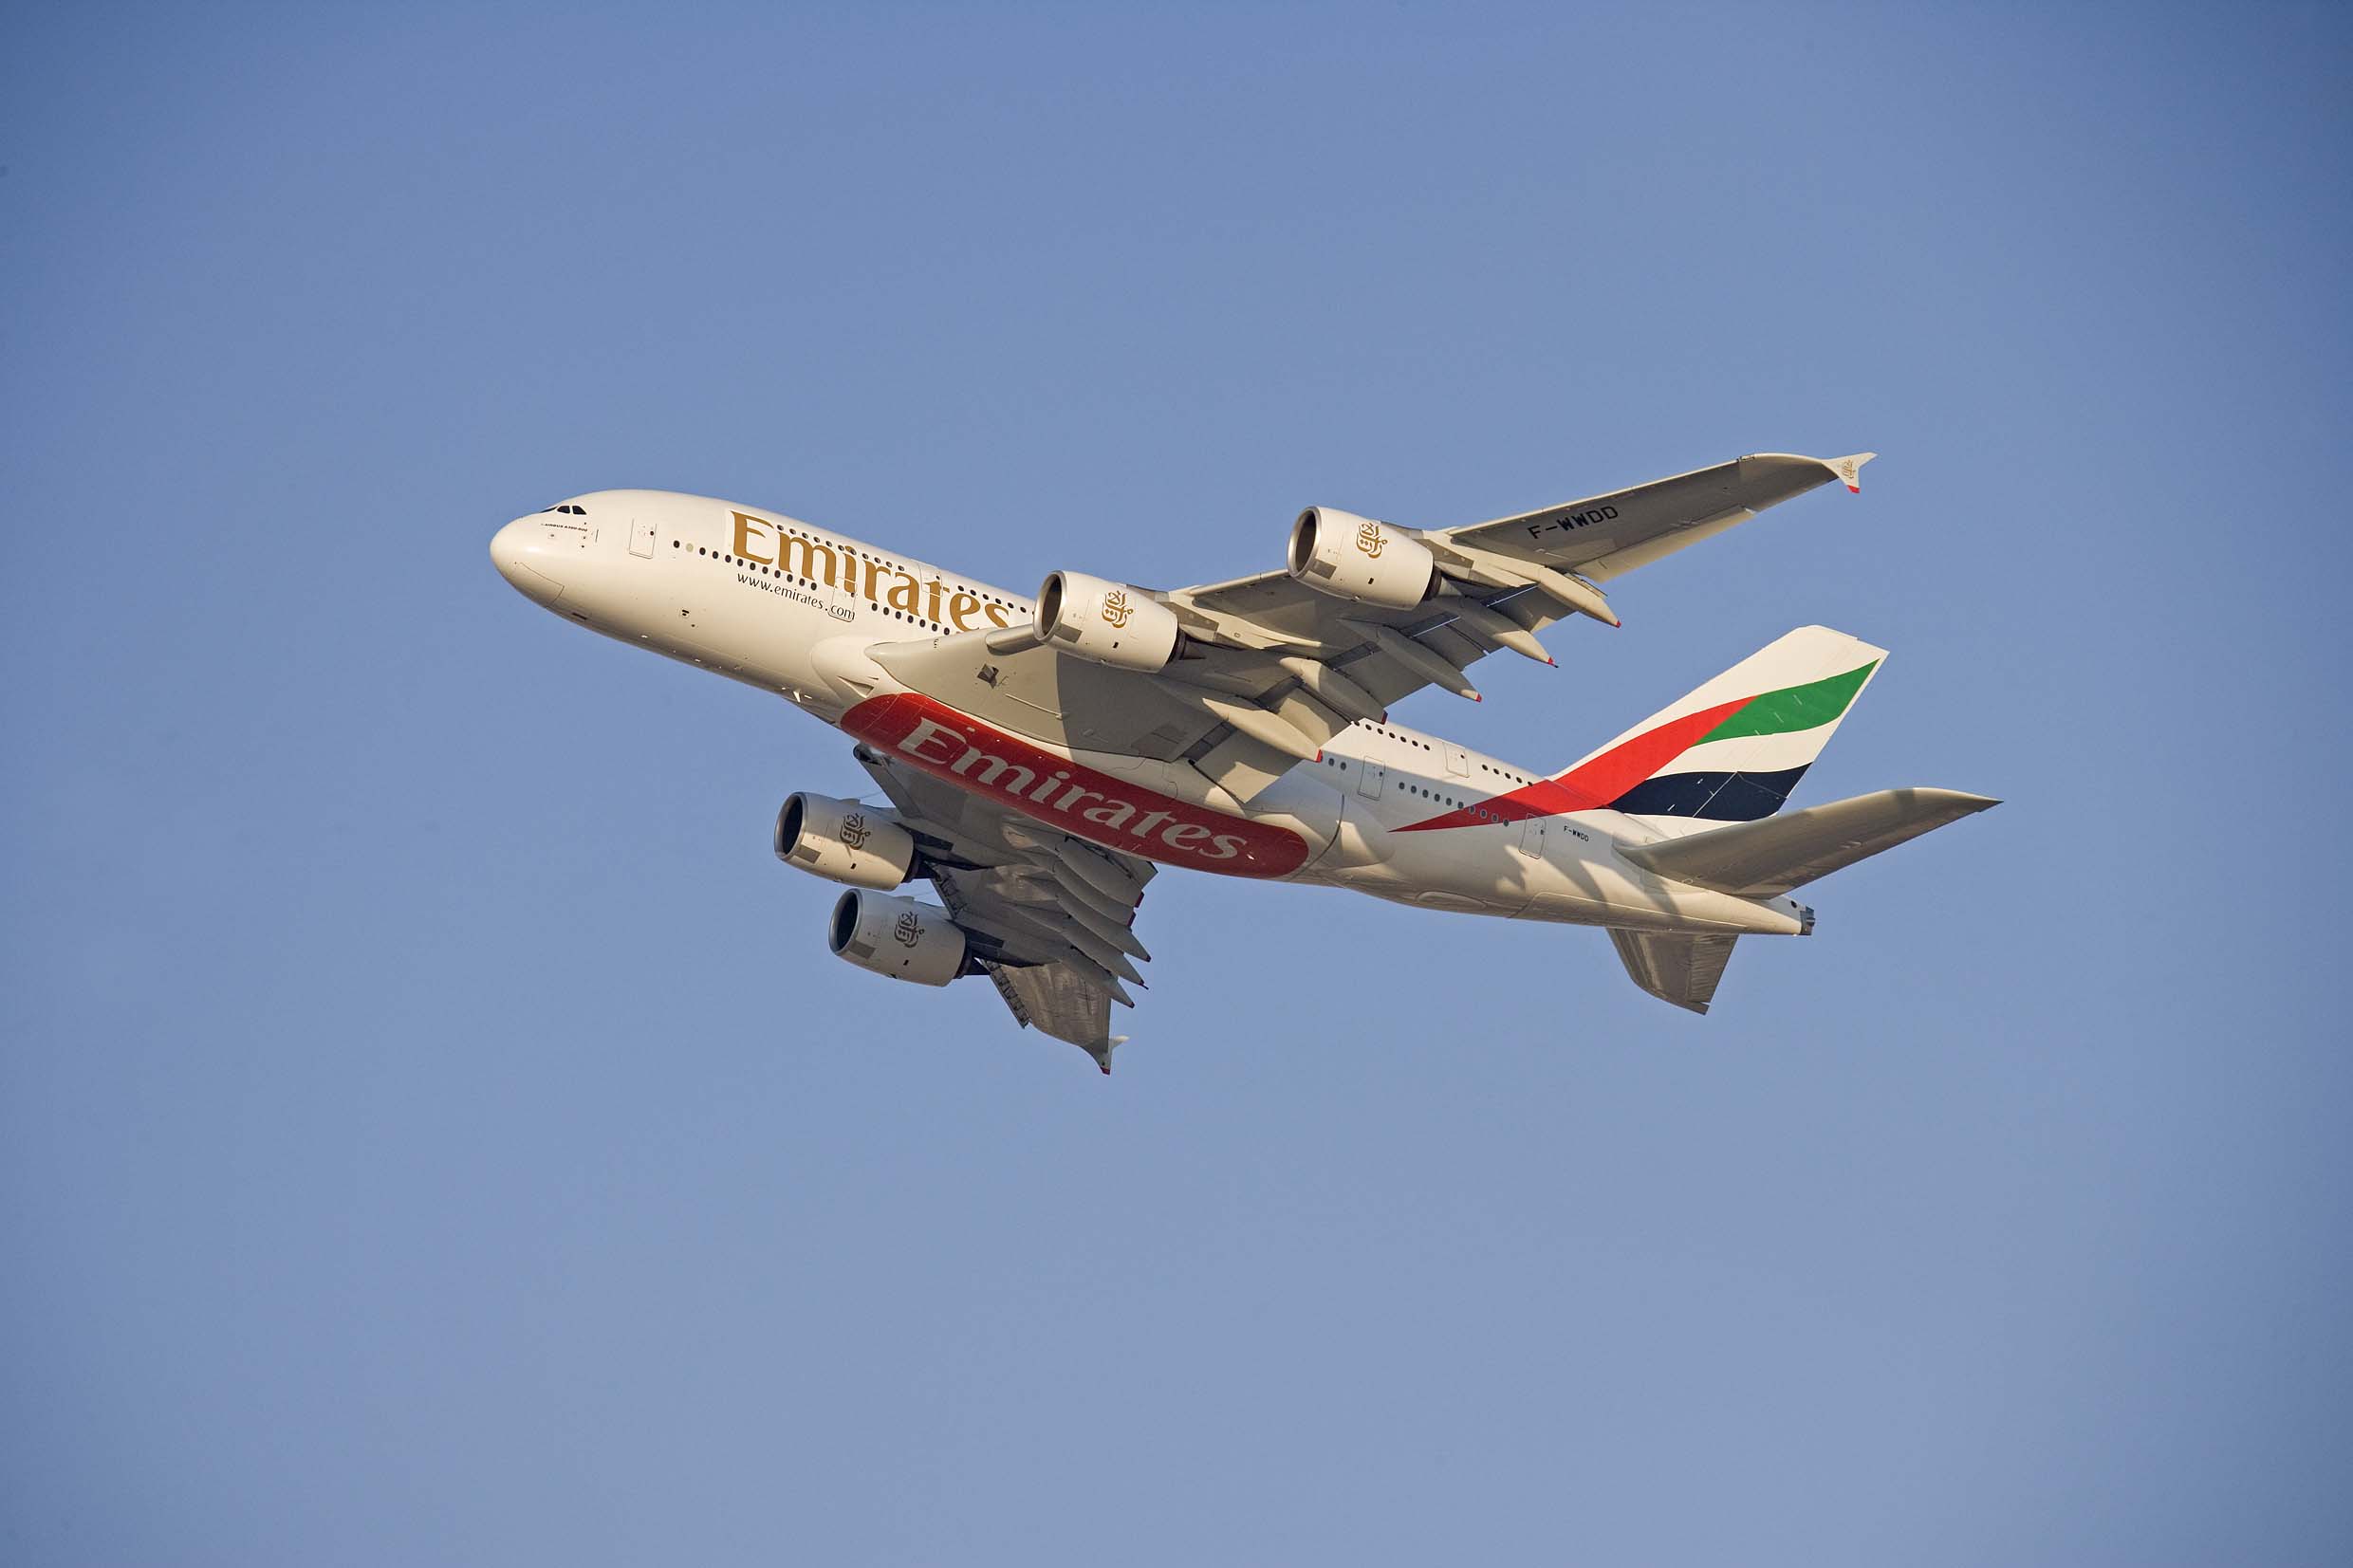 Interdiction des ordinateurs à bord levée pour Emirates